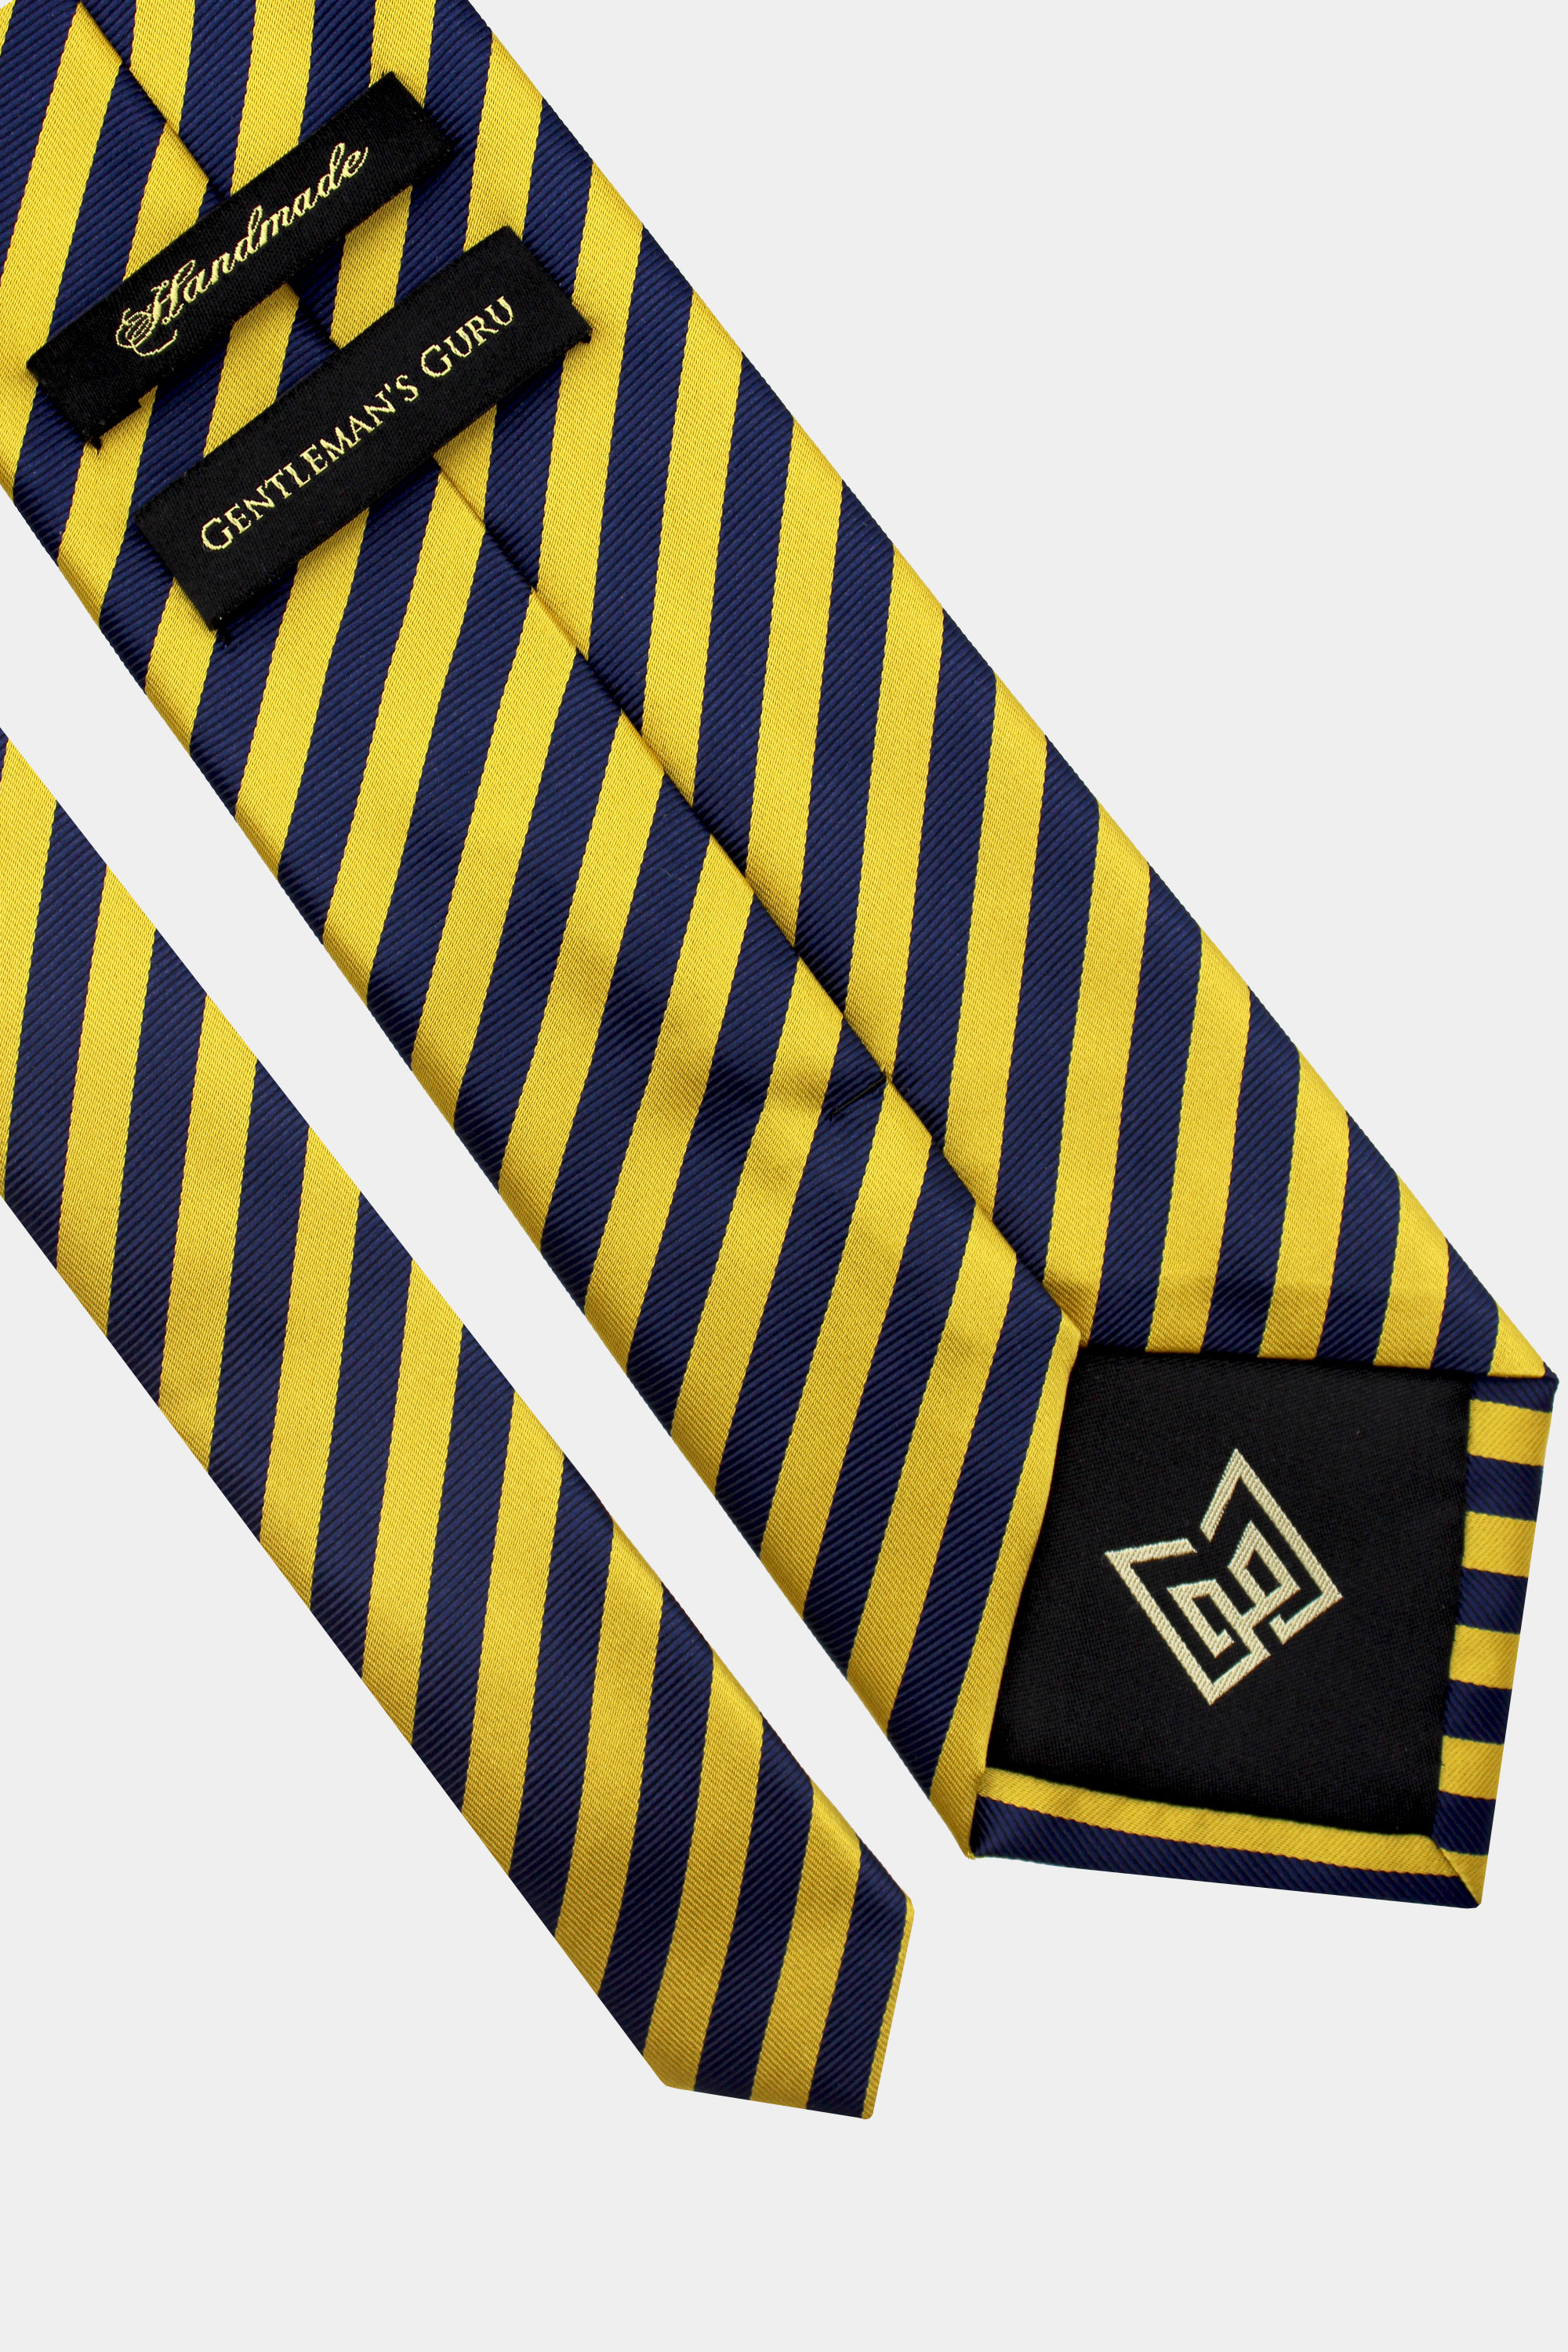 Navy-Blue-and-Gold-Striped-Tie-from-Gentlemansguru.com